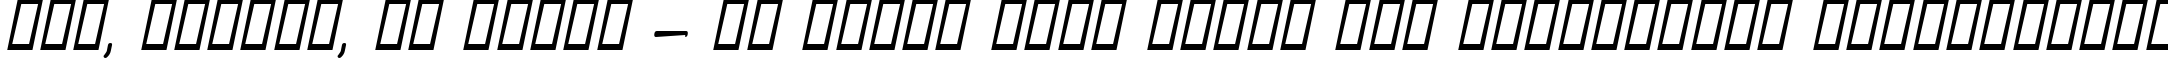 Пример написания шрифтом Aunchanted Bold Oblique текста на украинском